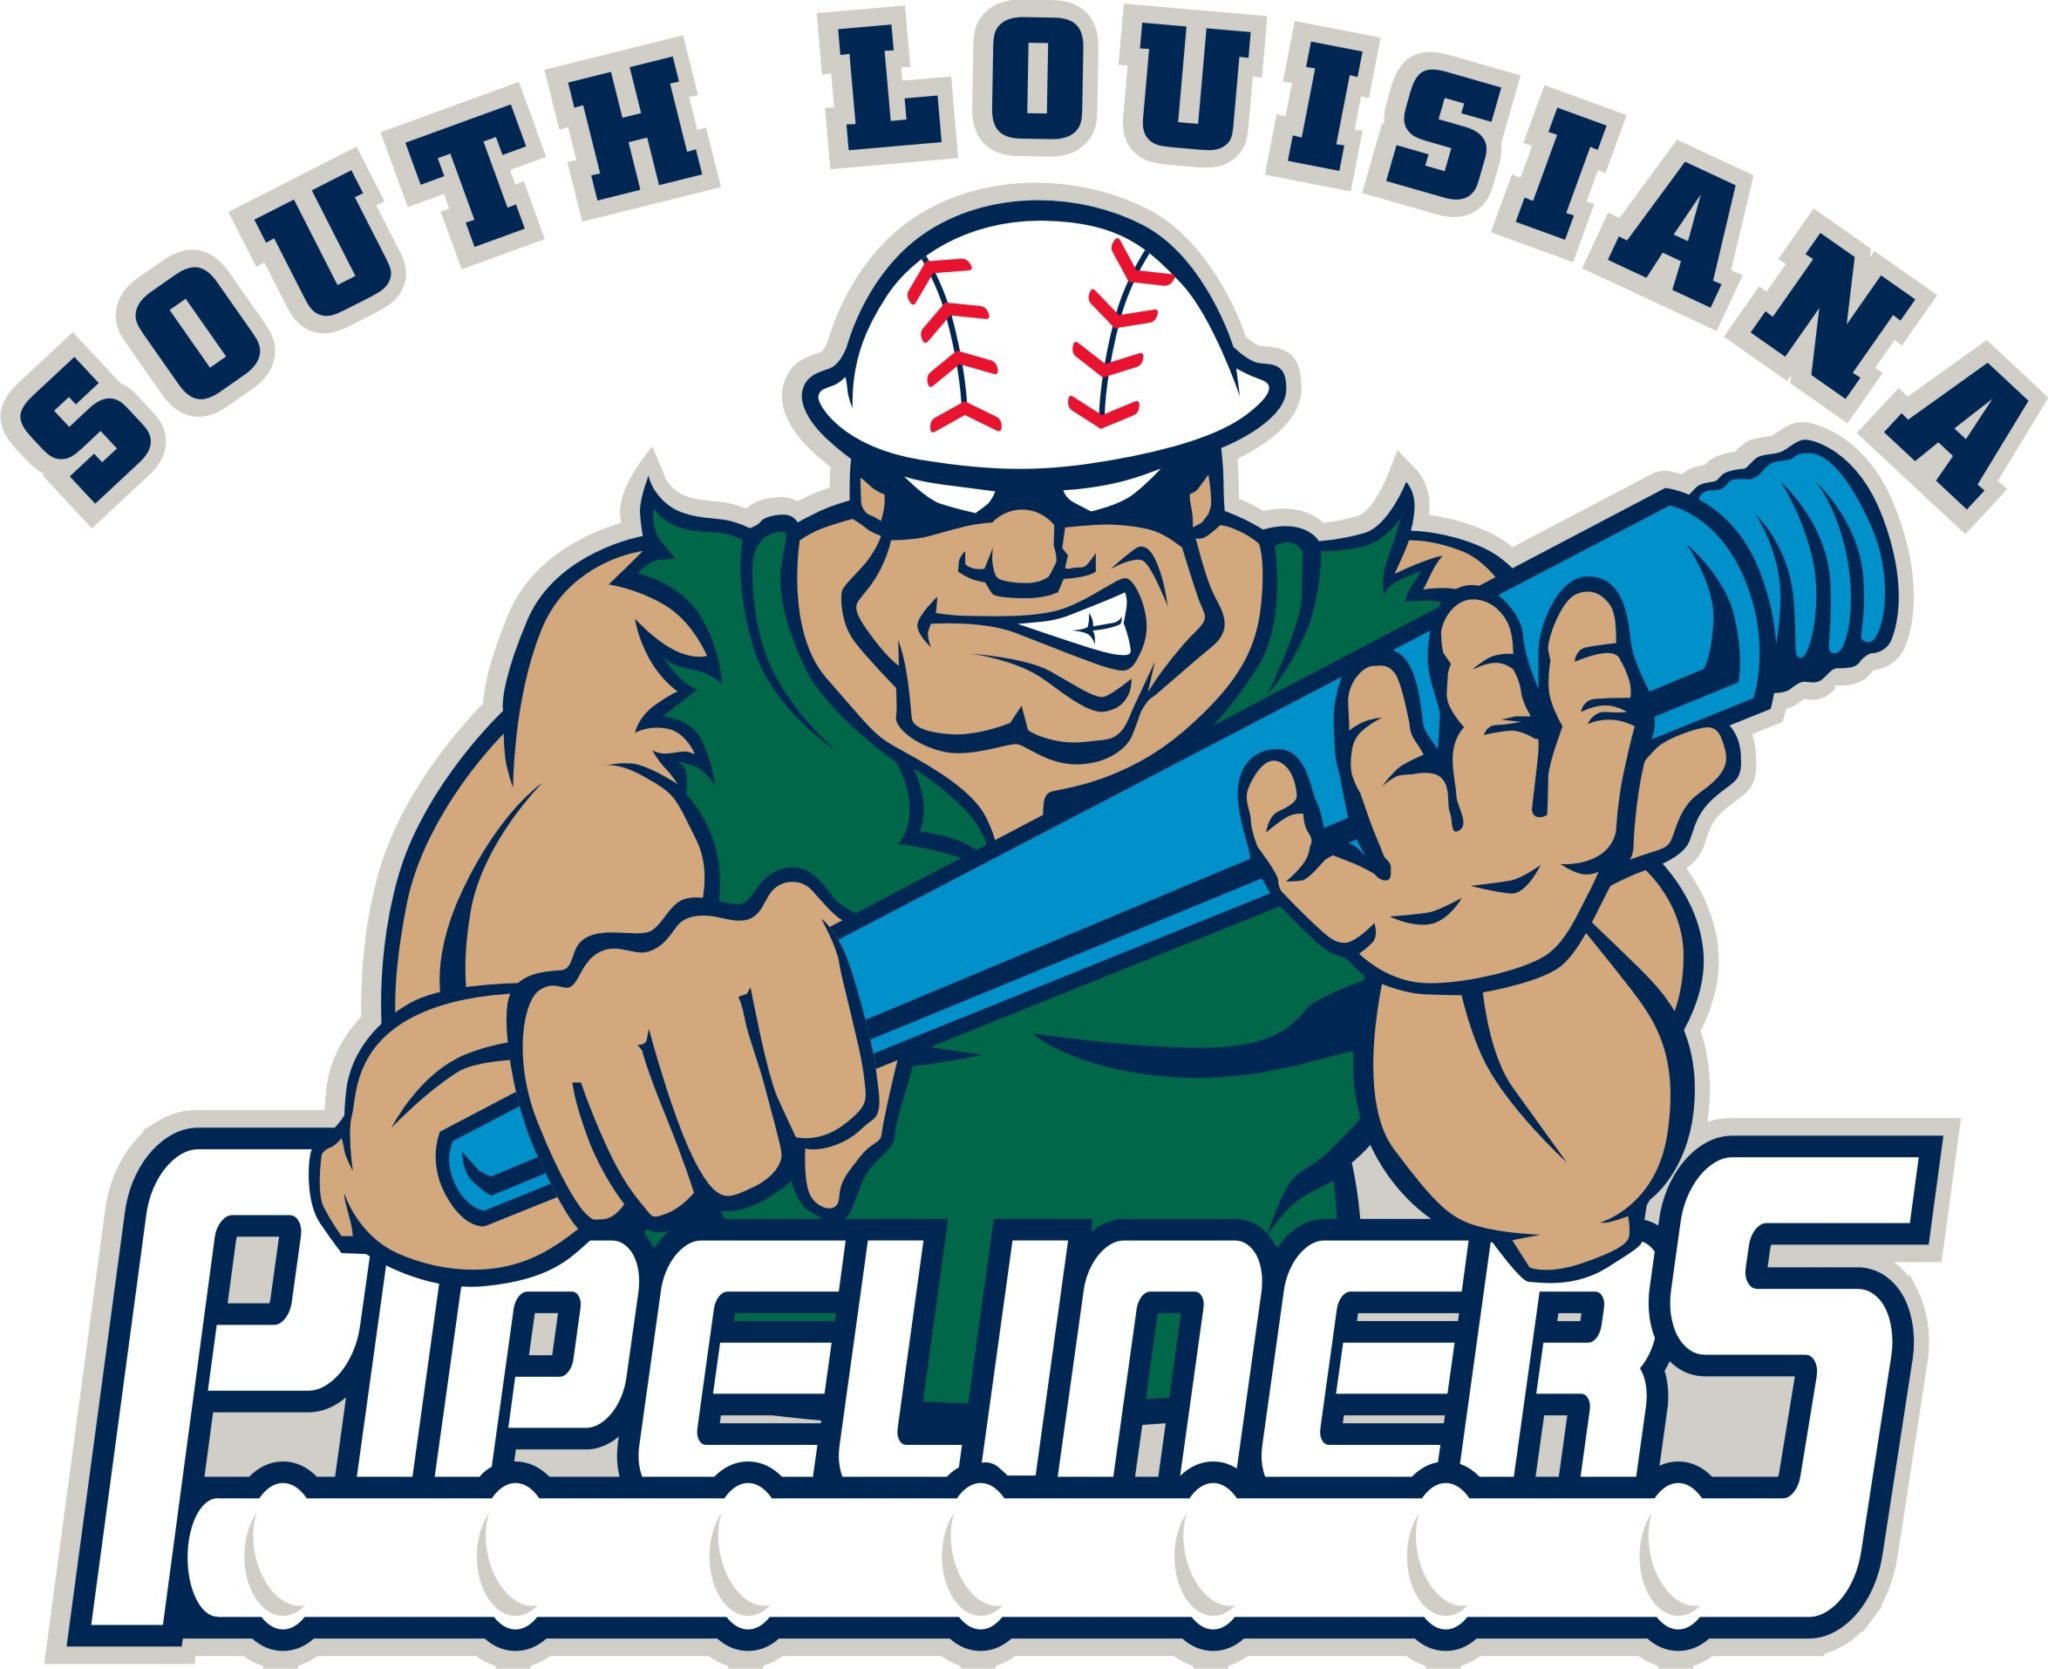 South Louisiana Pipeliners logo